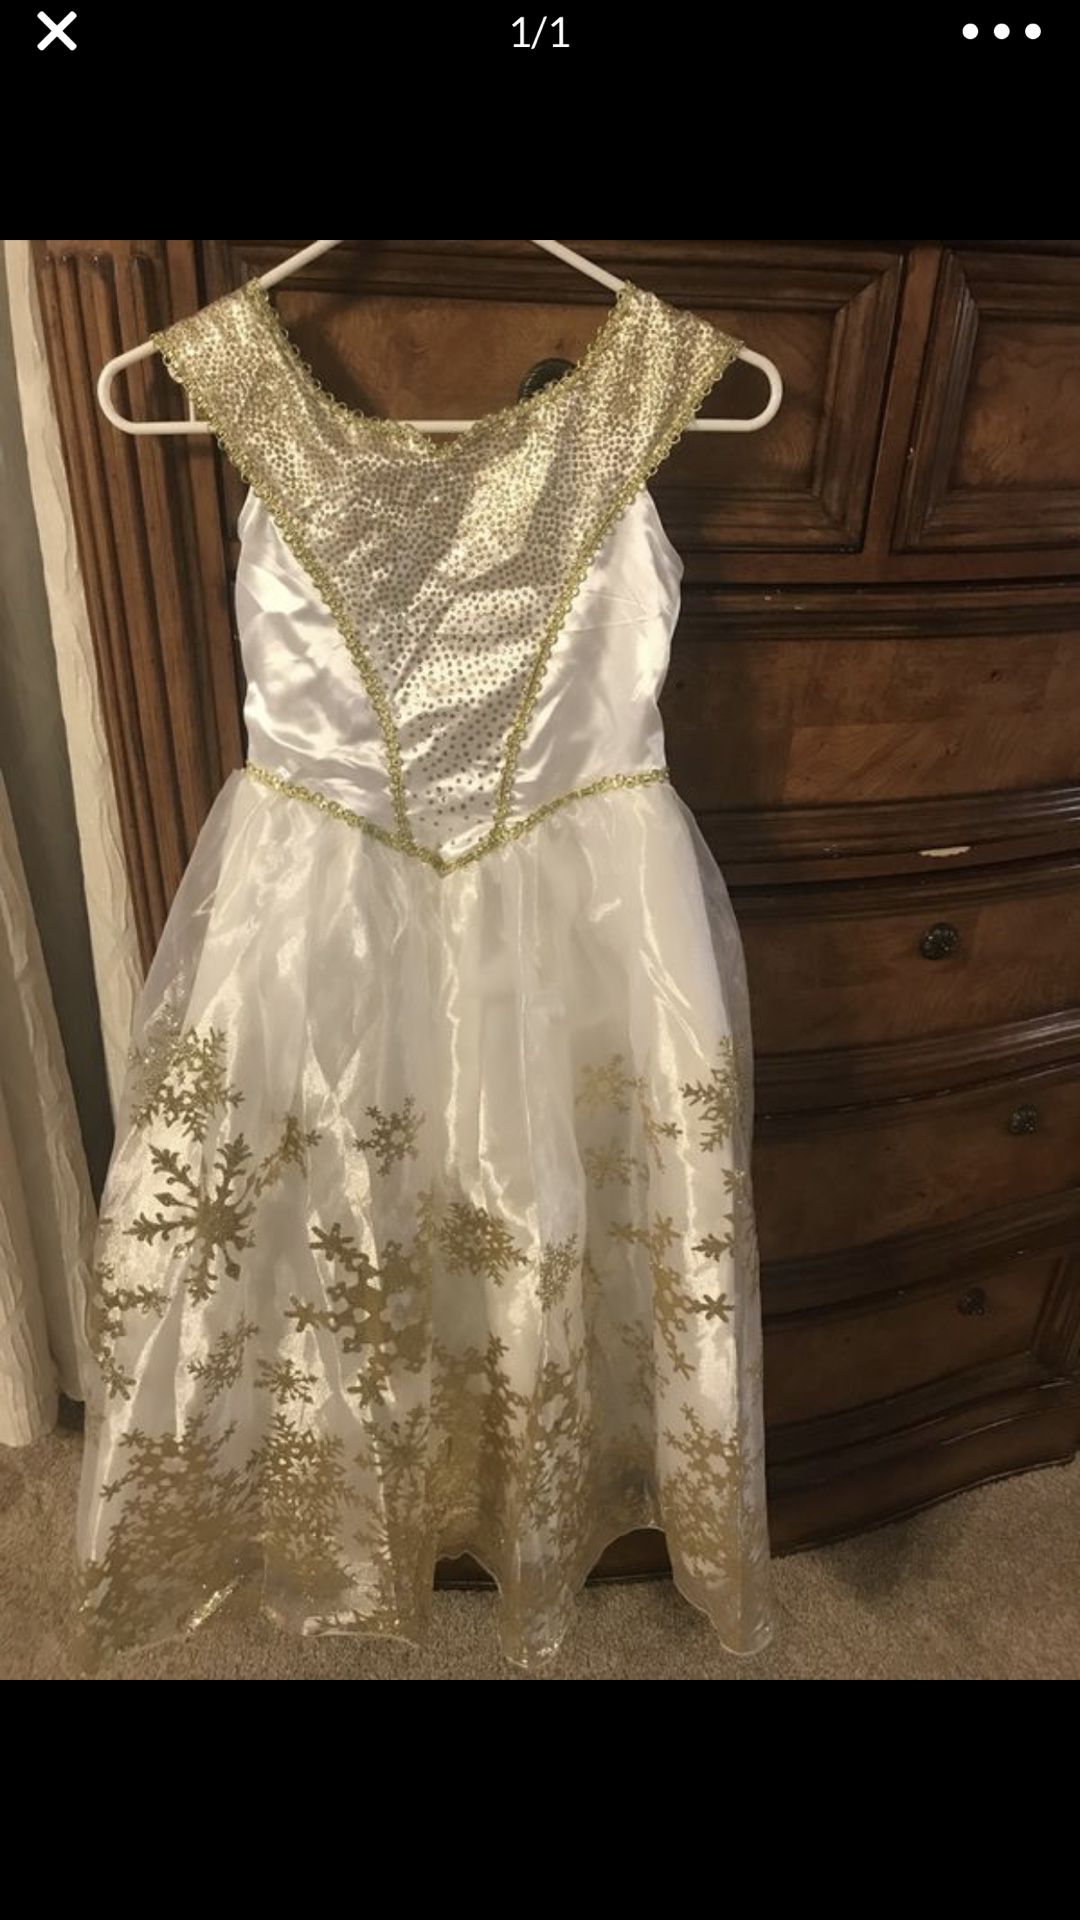 Princess costume dress